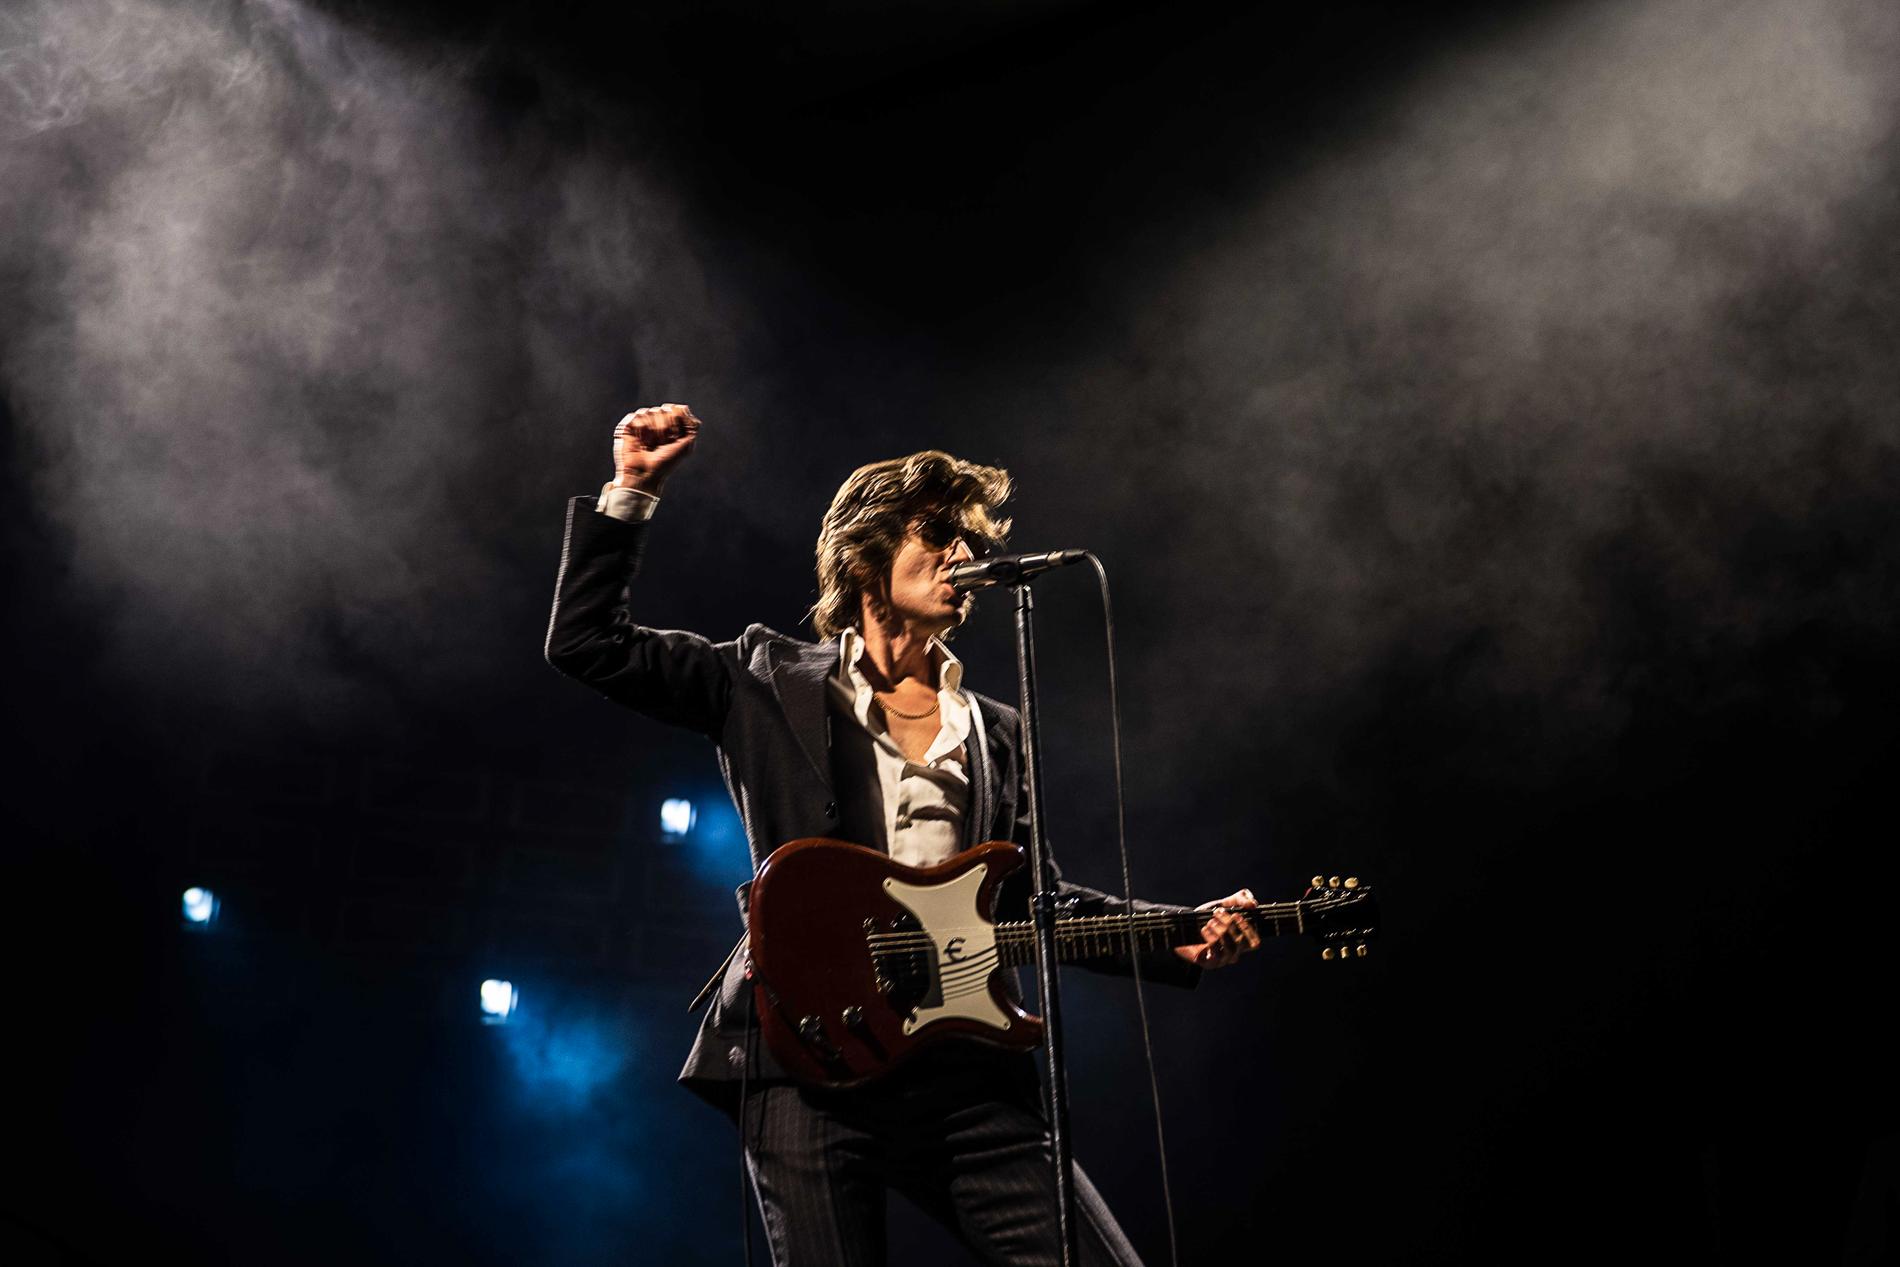 Alex Turner i Arctic Monkeys har den lyskraft som varje klassiskt popband behöver. 